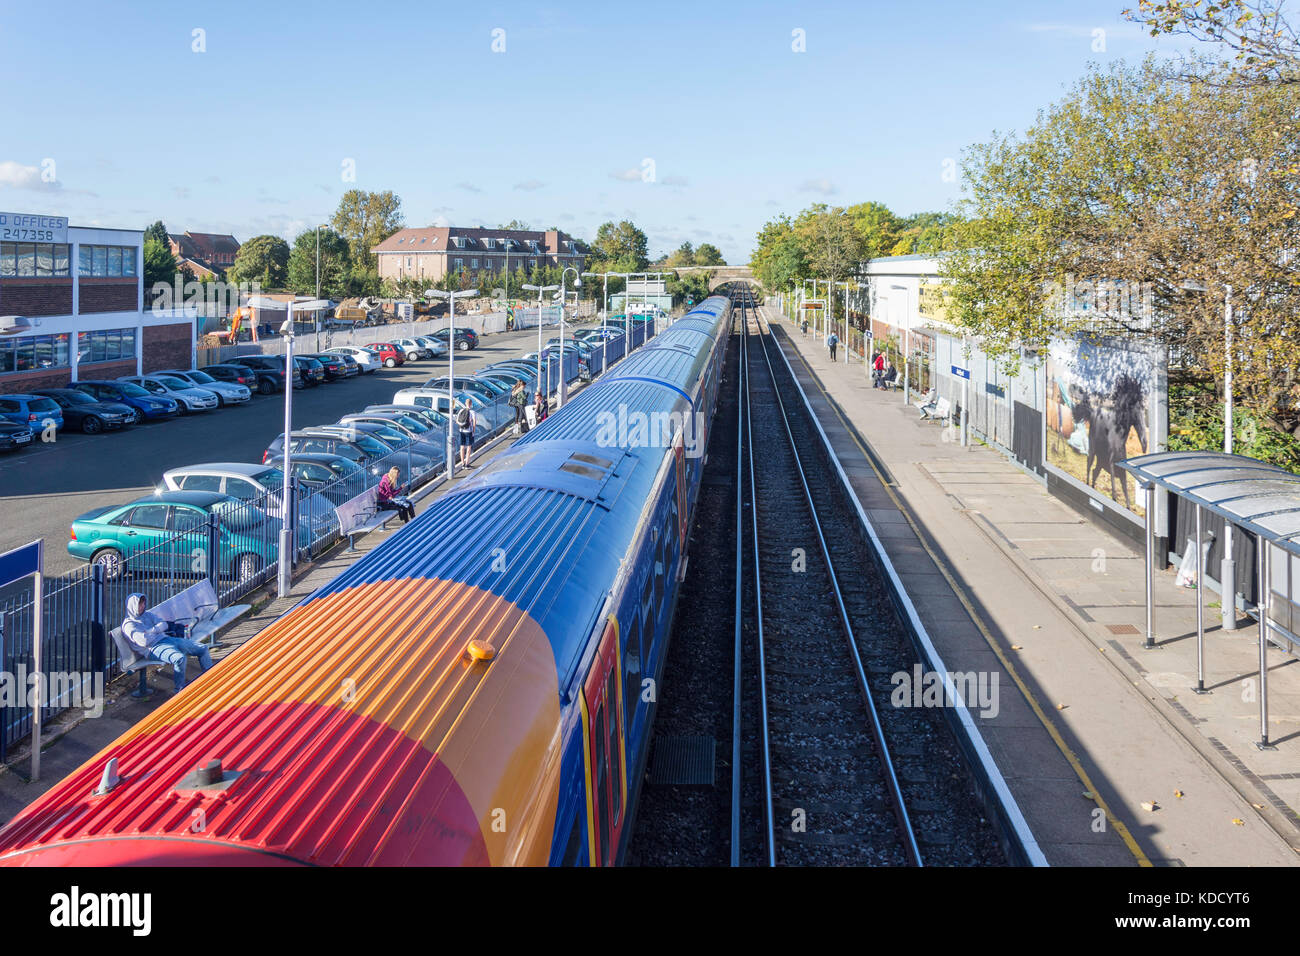 South West Train à la gare d'Ashford, Ashford, Surrey, Angleterre, Royaume-Uni Banque D'Images